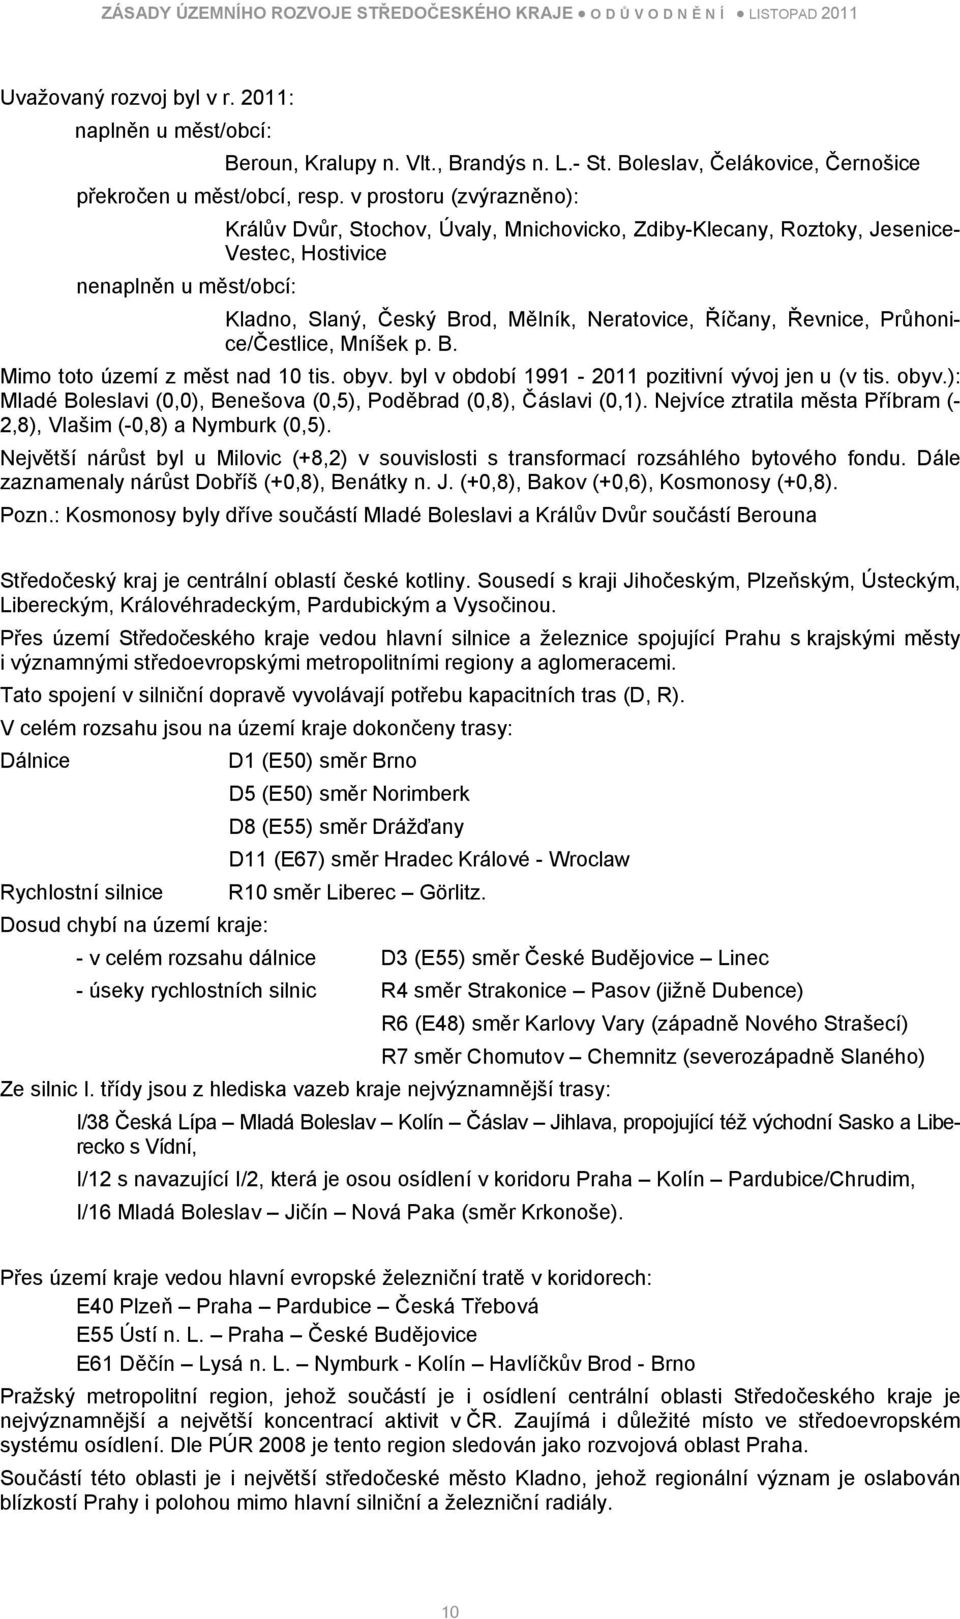 Řevnice, Průhonice/Čestlice, Mníšek p. B. Mimo toto území z měst nad 10 tis. obyv. byl v období 1991-2011 pozitivní vývoj jen u (v tis. obyv.): Mladé Boleslavi (0,0), Benešova (0,5), Poděbrad (0,8), Čáslavi (0,1).